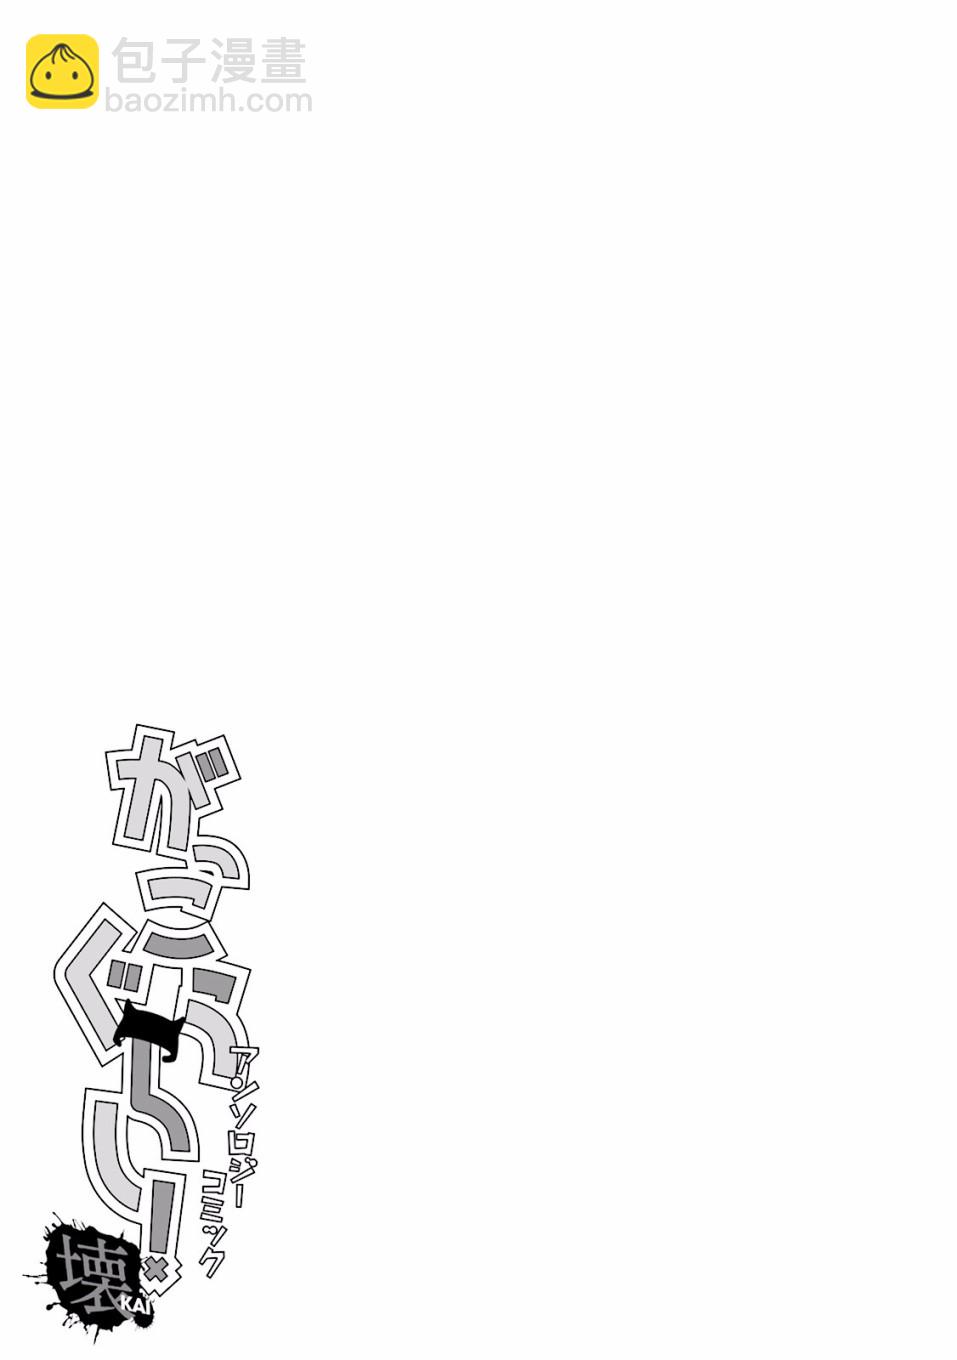 學園孤島 壞 - 封面&插頁漫畫 - 3